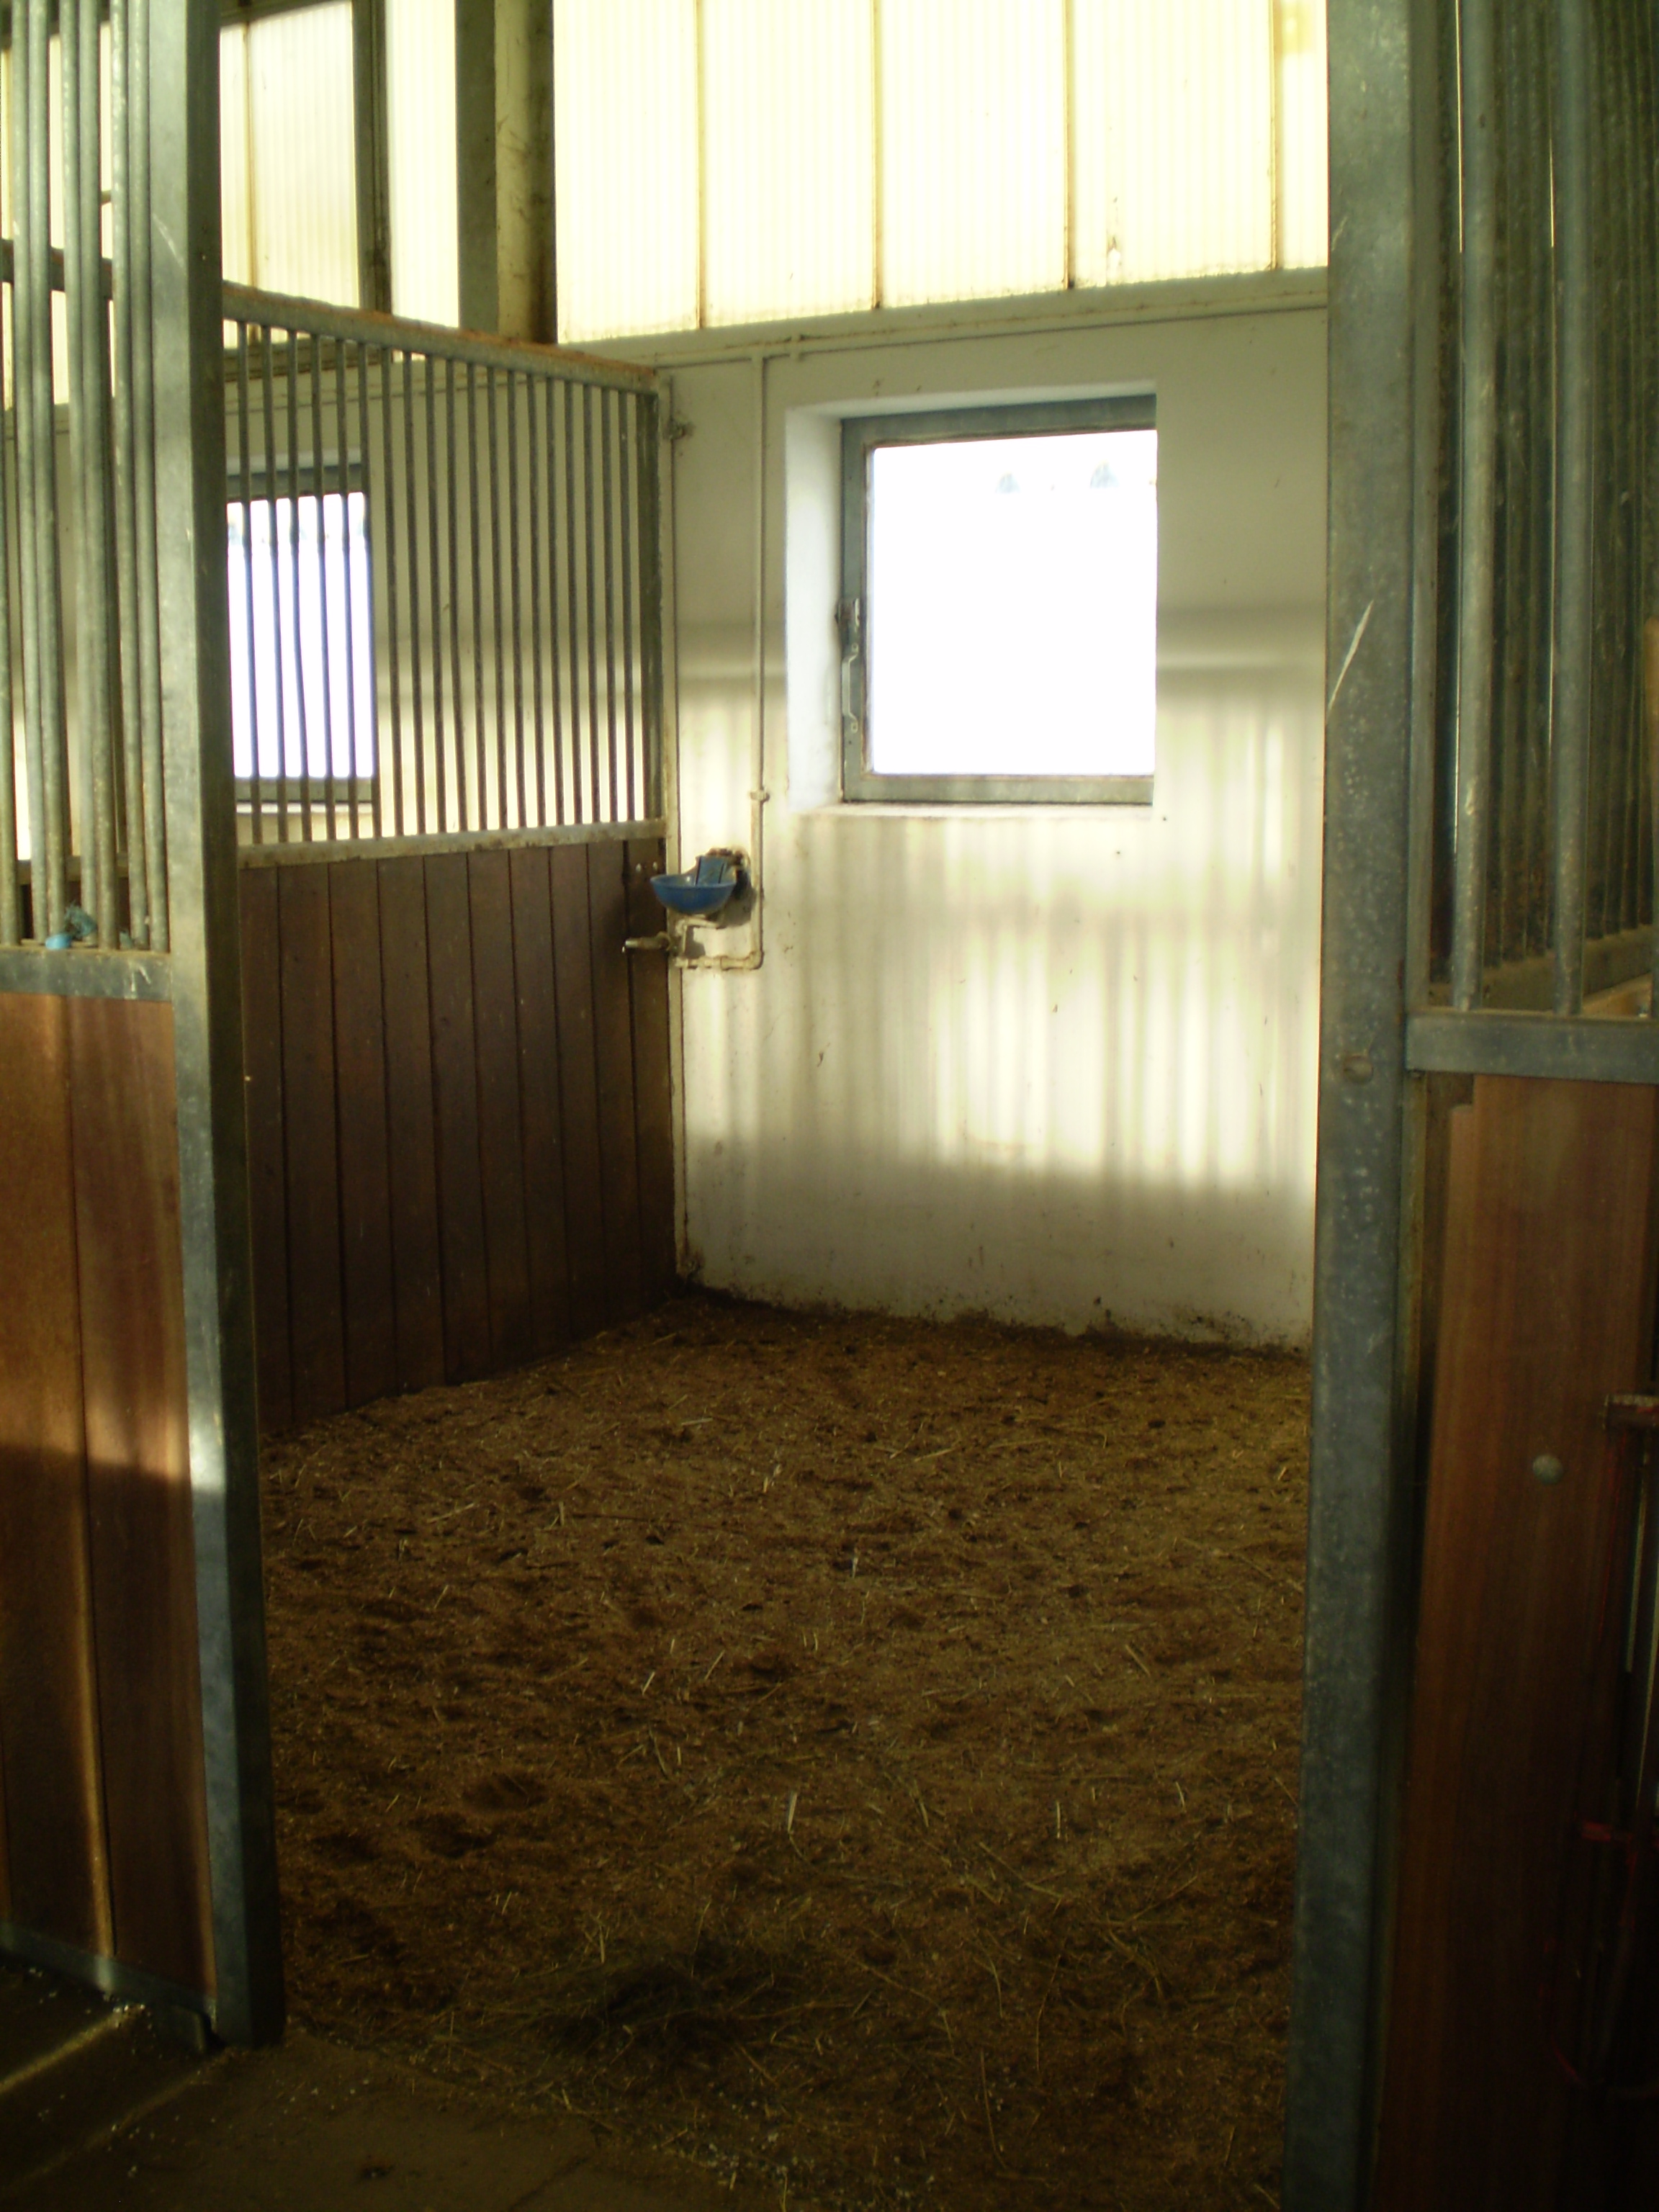 Unsere hellen und geräumigen Pferdboxen